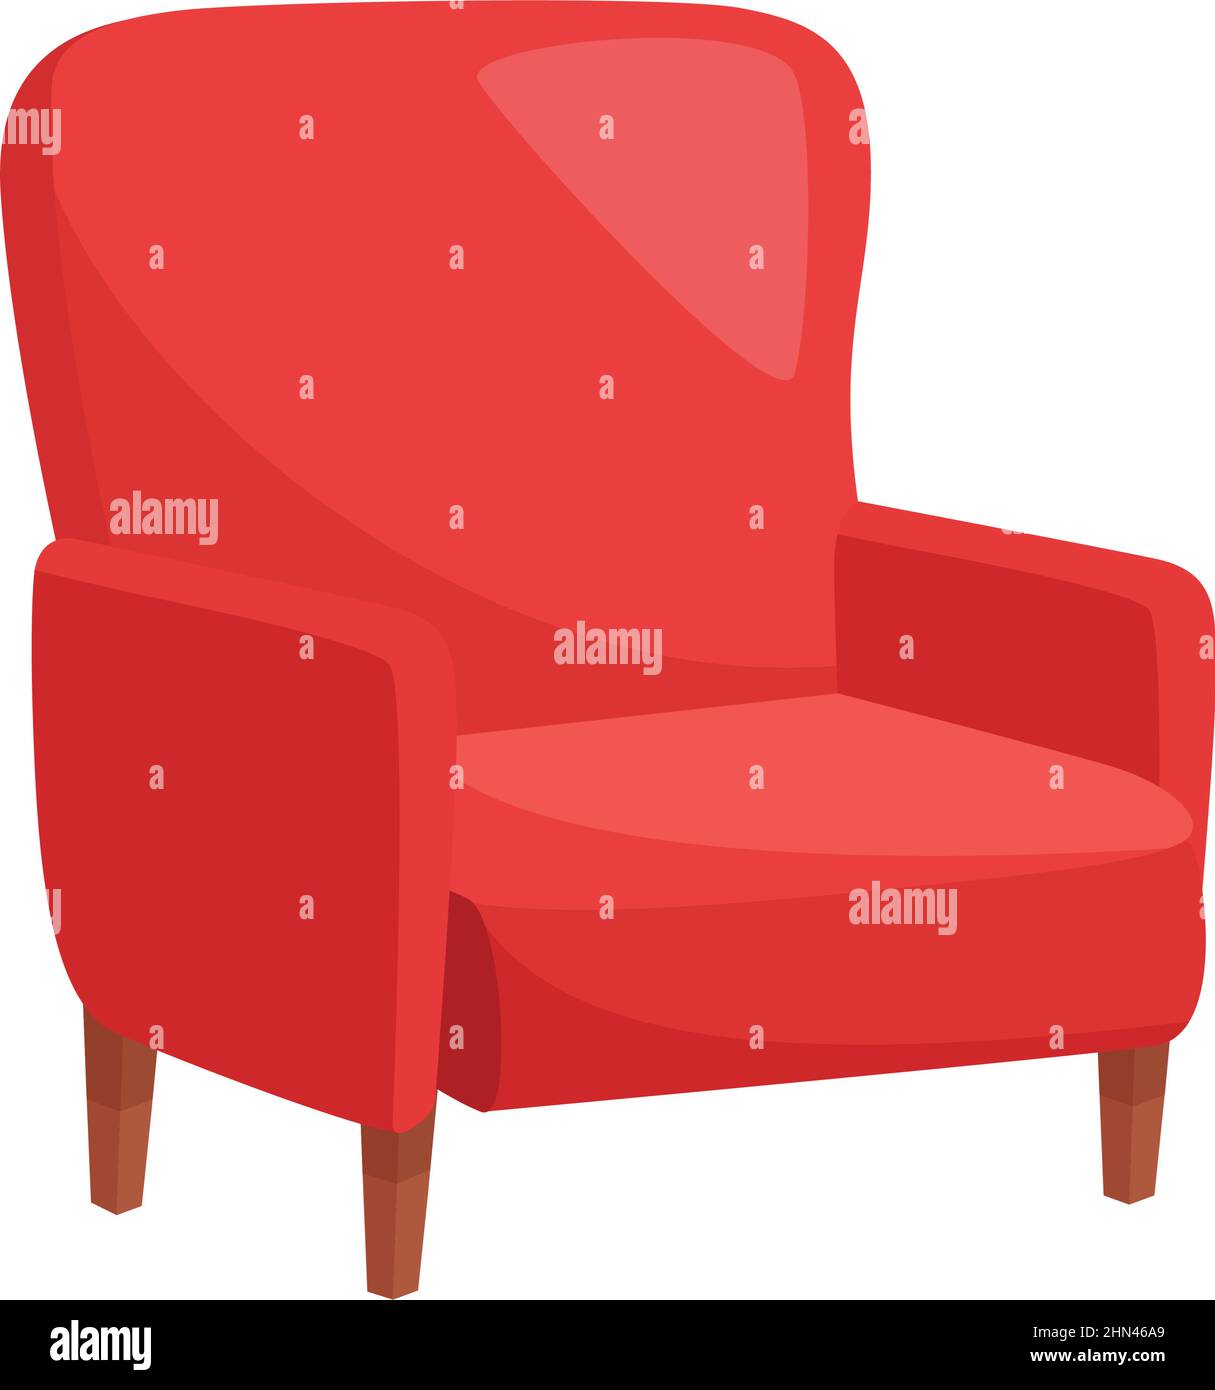 Fauteuil rouge sur fond blanc, illustration vectorielle Illustration de Vecteur